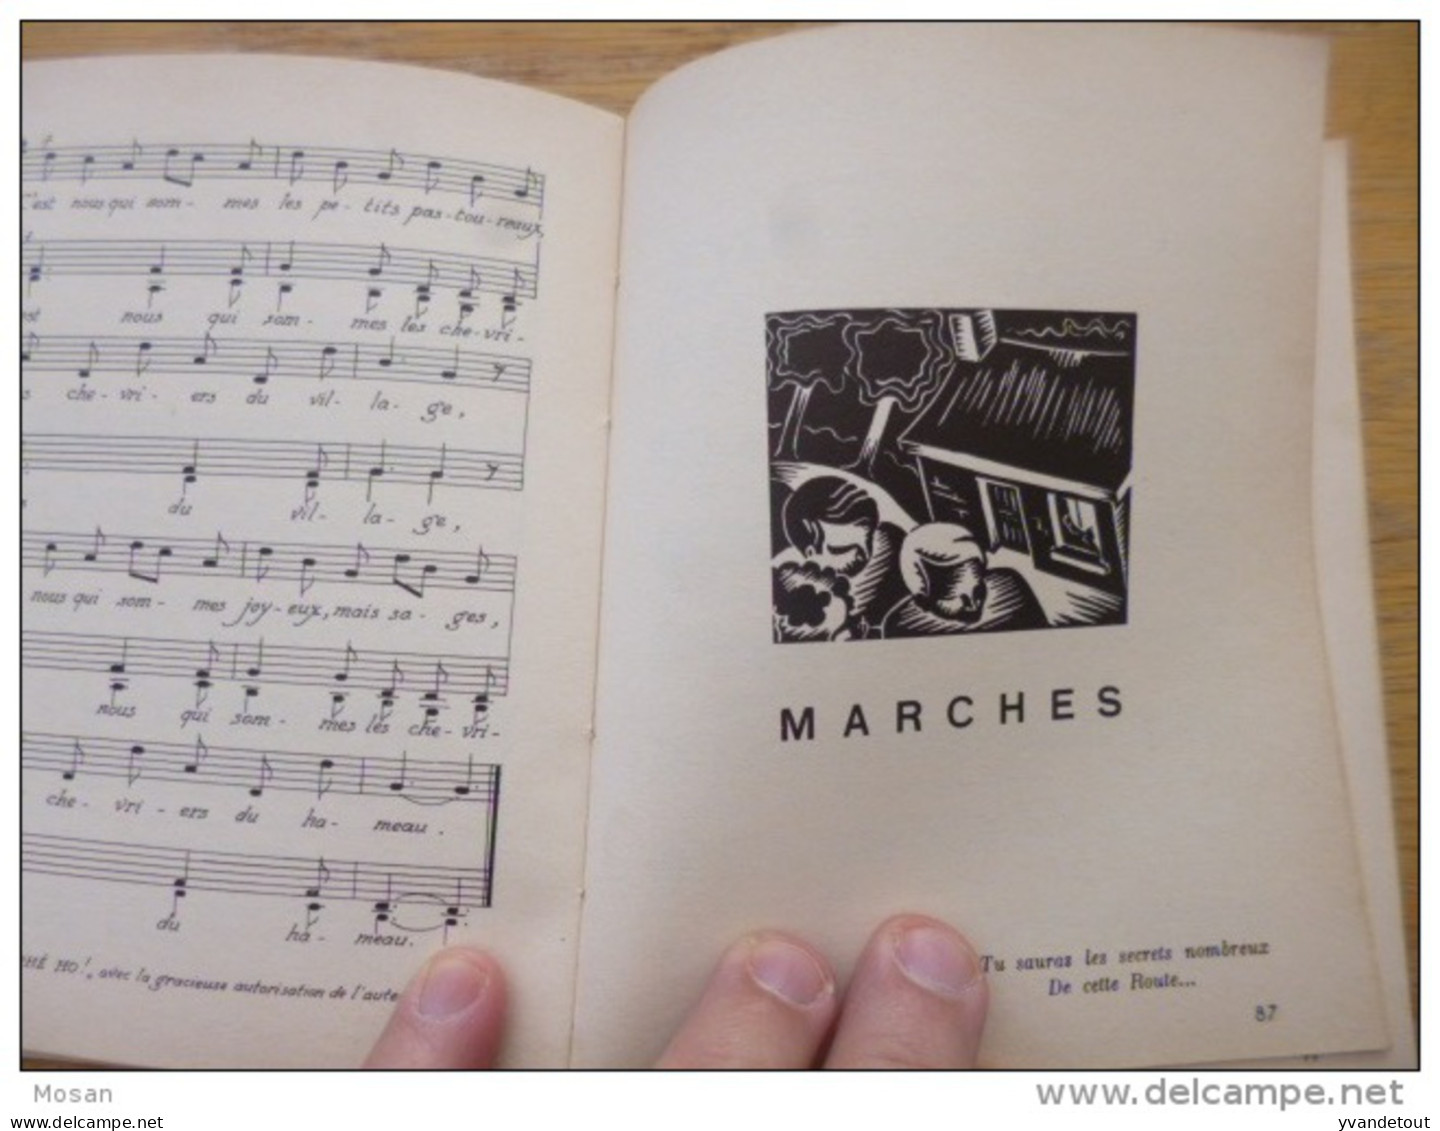 Tiouli. Anthologie De Chants Recueillis Pat P. Ernst Et R. Hanquet. 1952. Scout, Louveteaux, Guide - Scouting